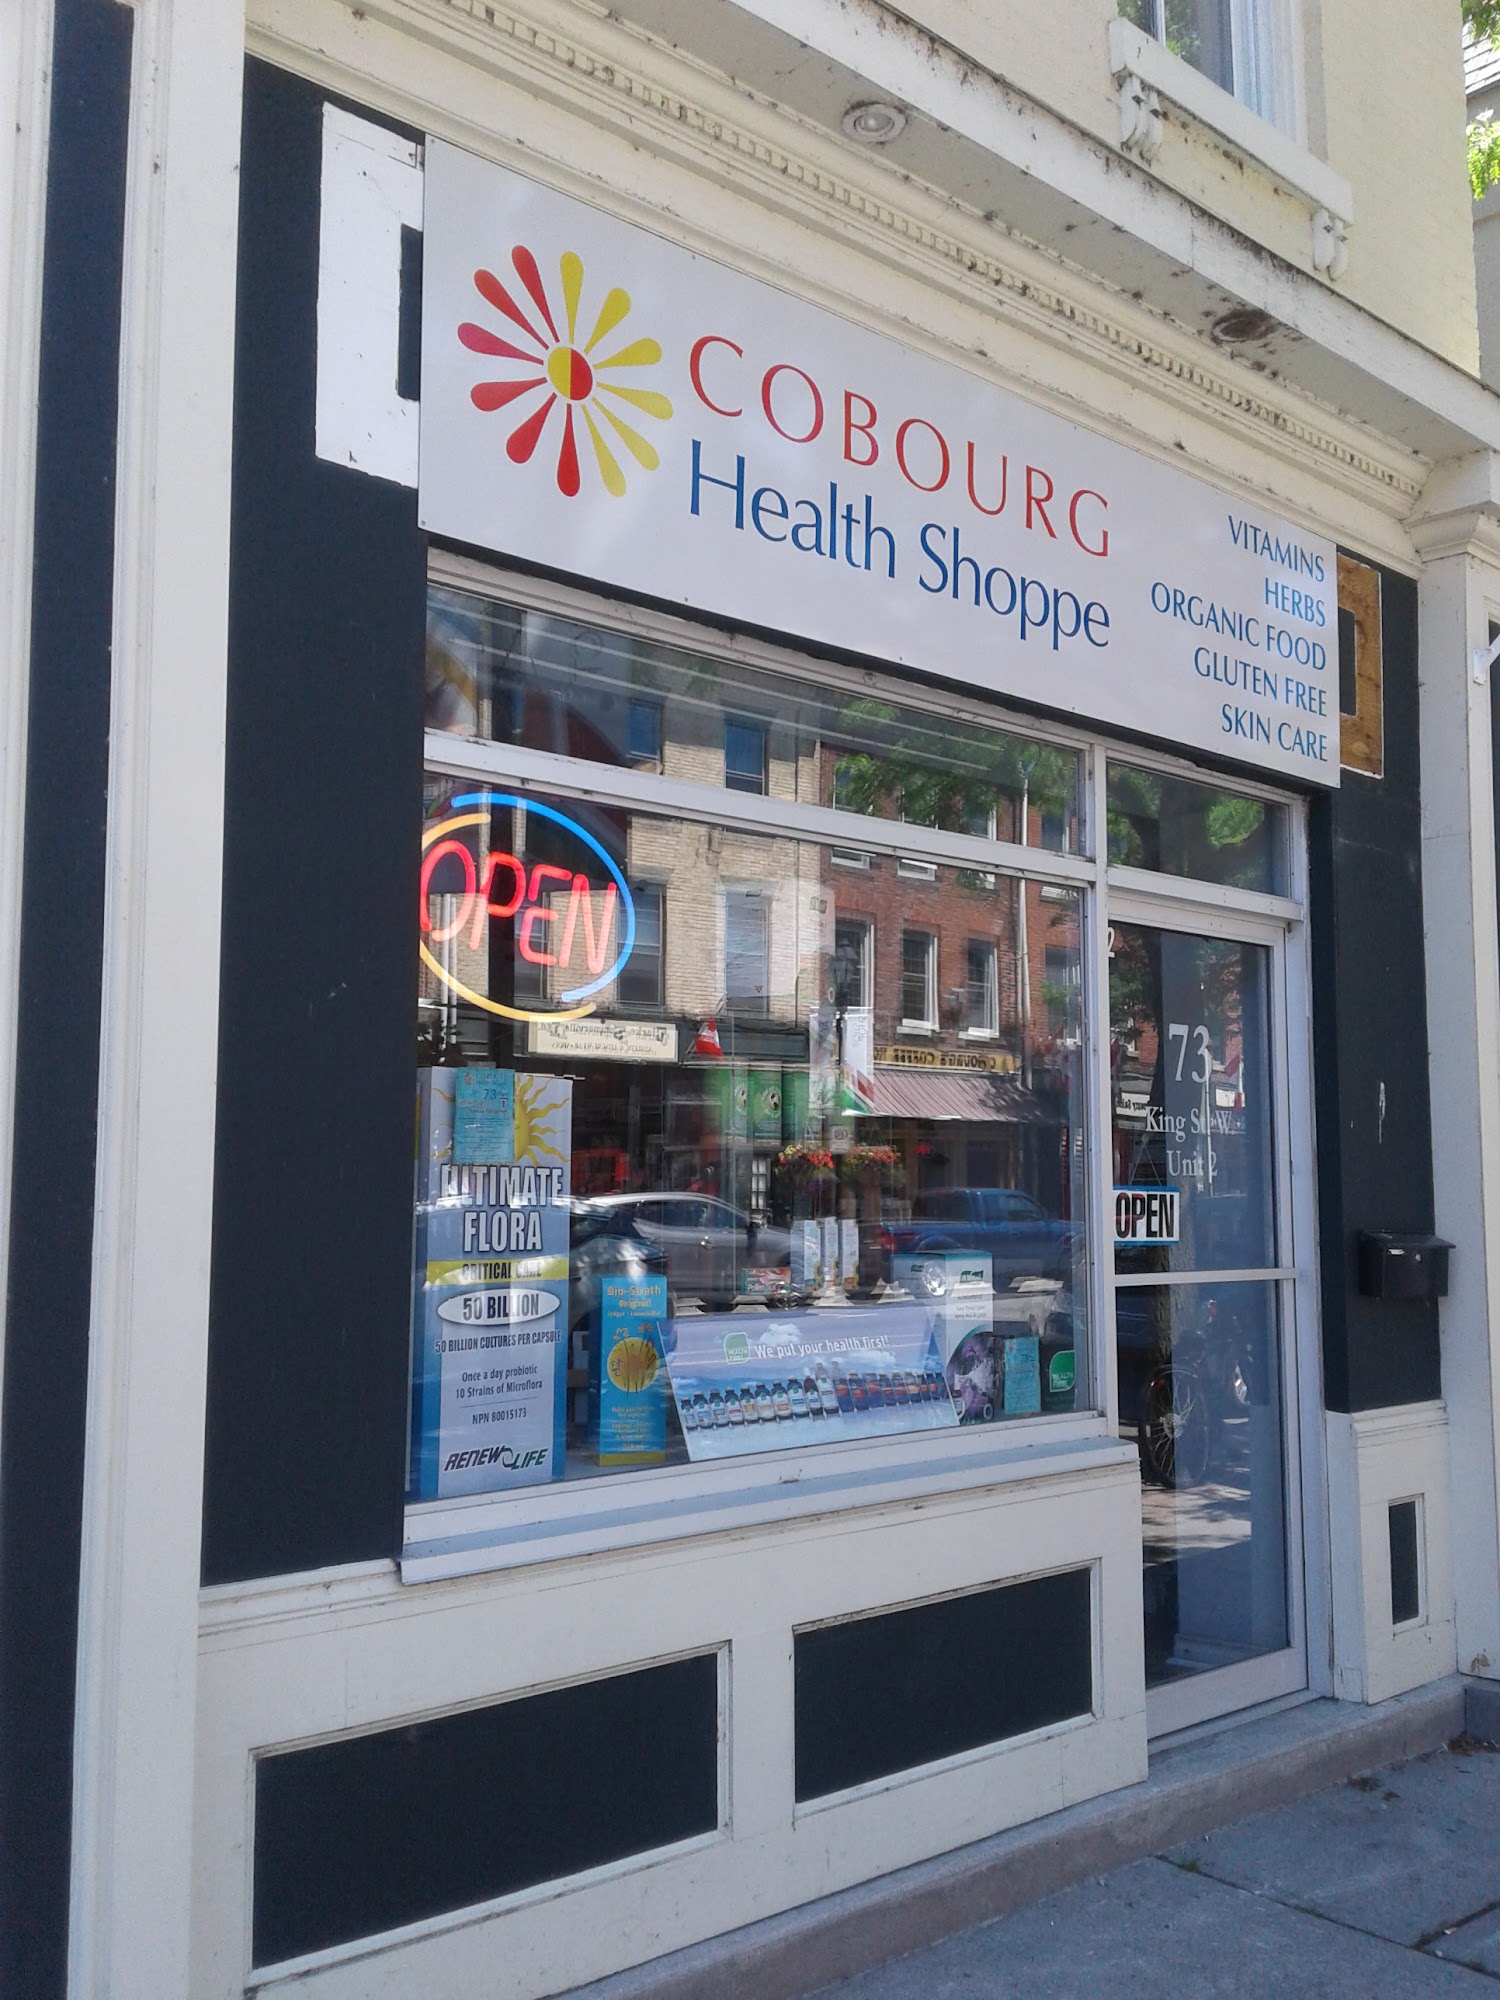 Cobourg Health Shoppe